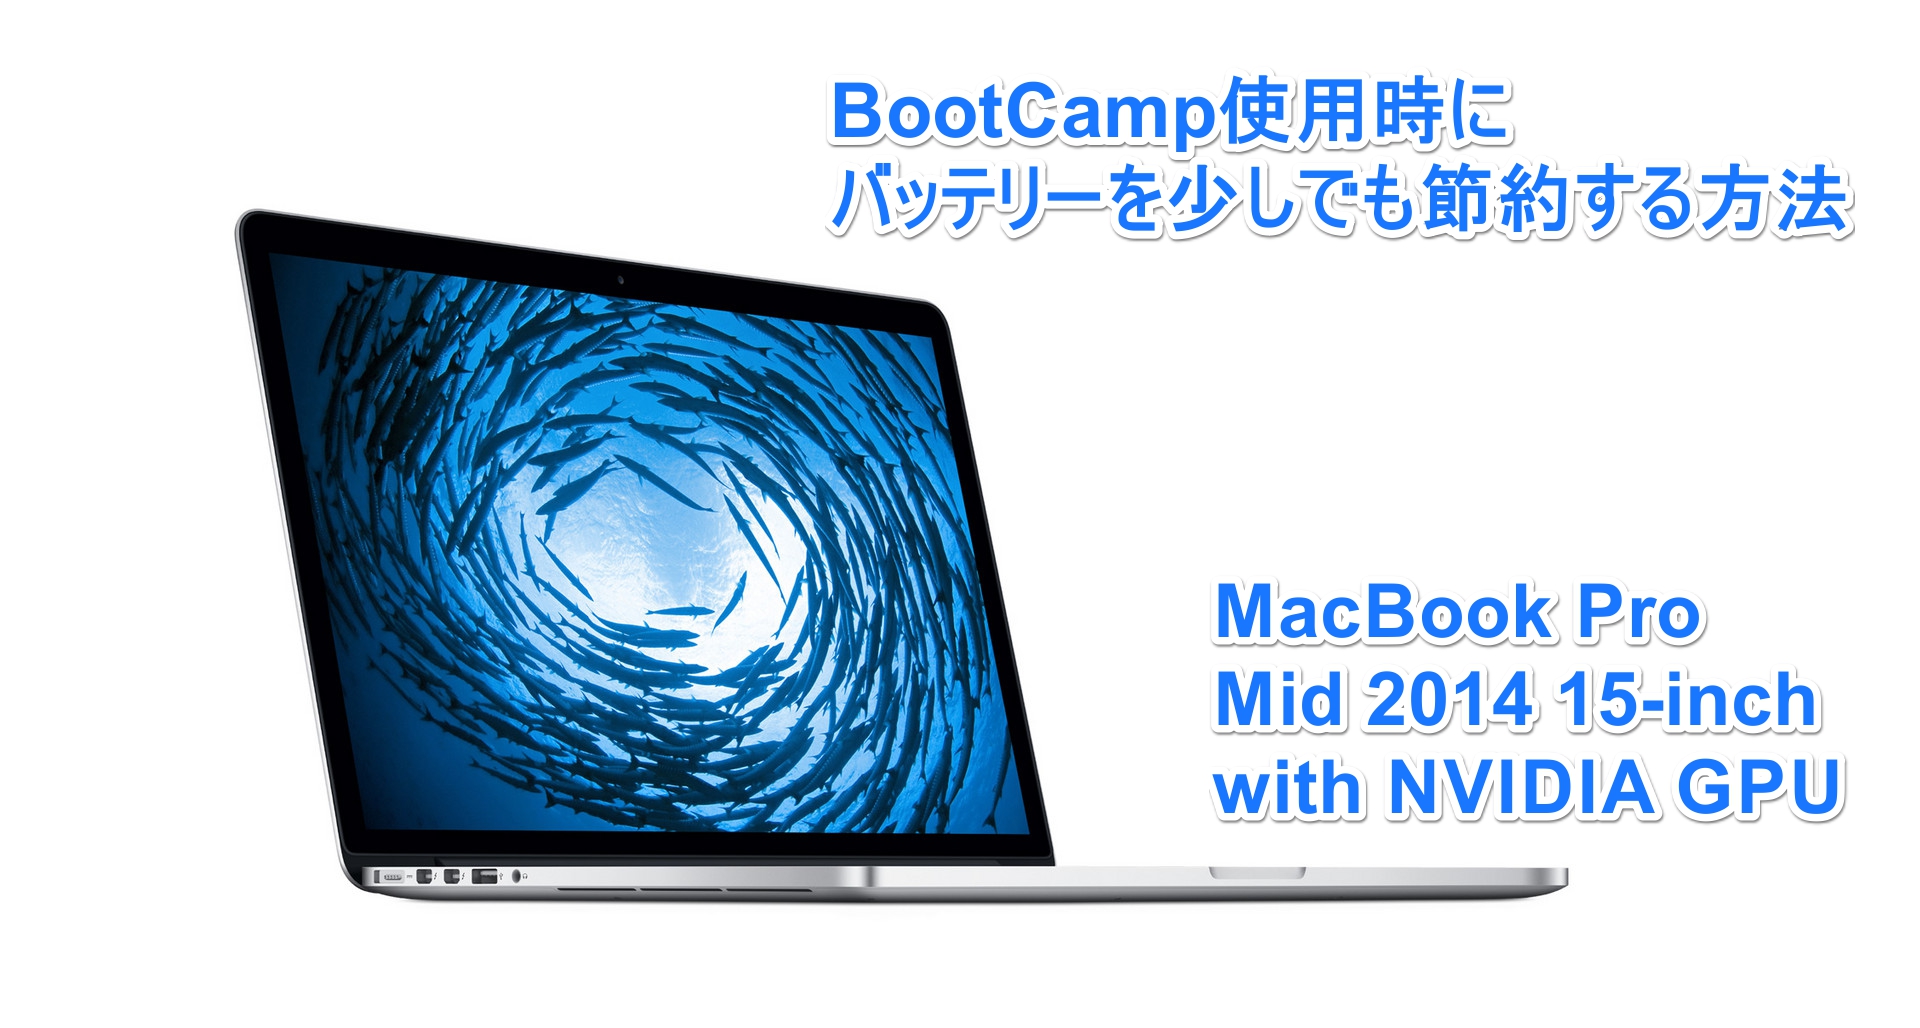 BootCamp使用時のMacBook Pro Retinaのバッテリーを節約する方法